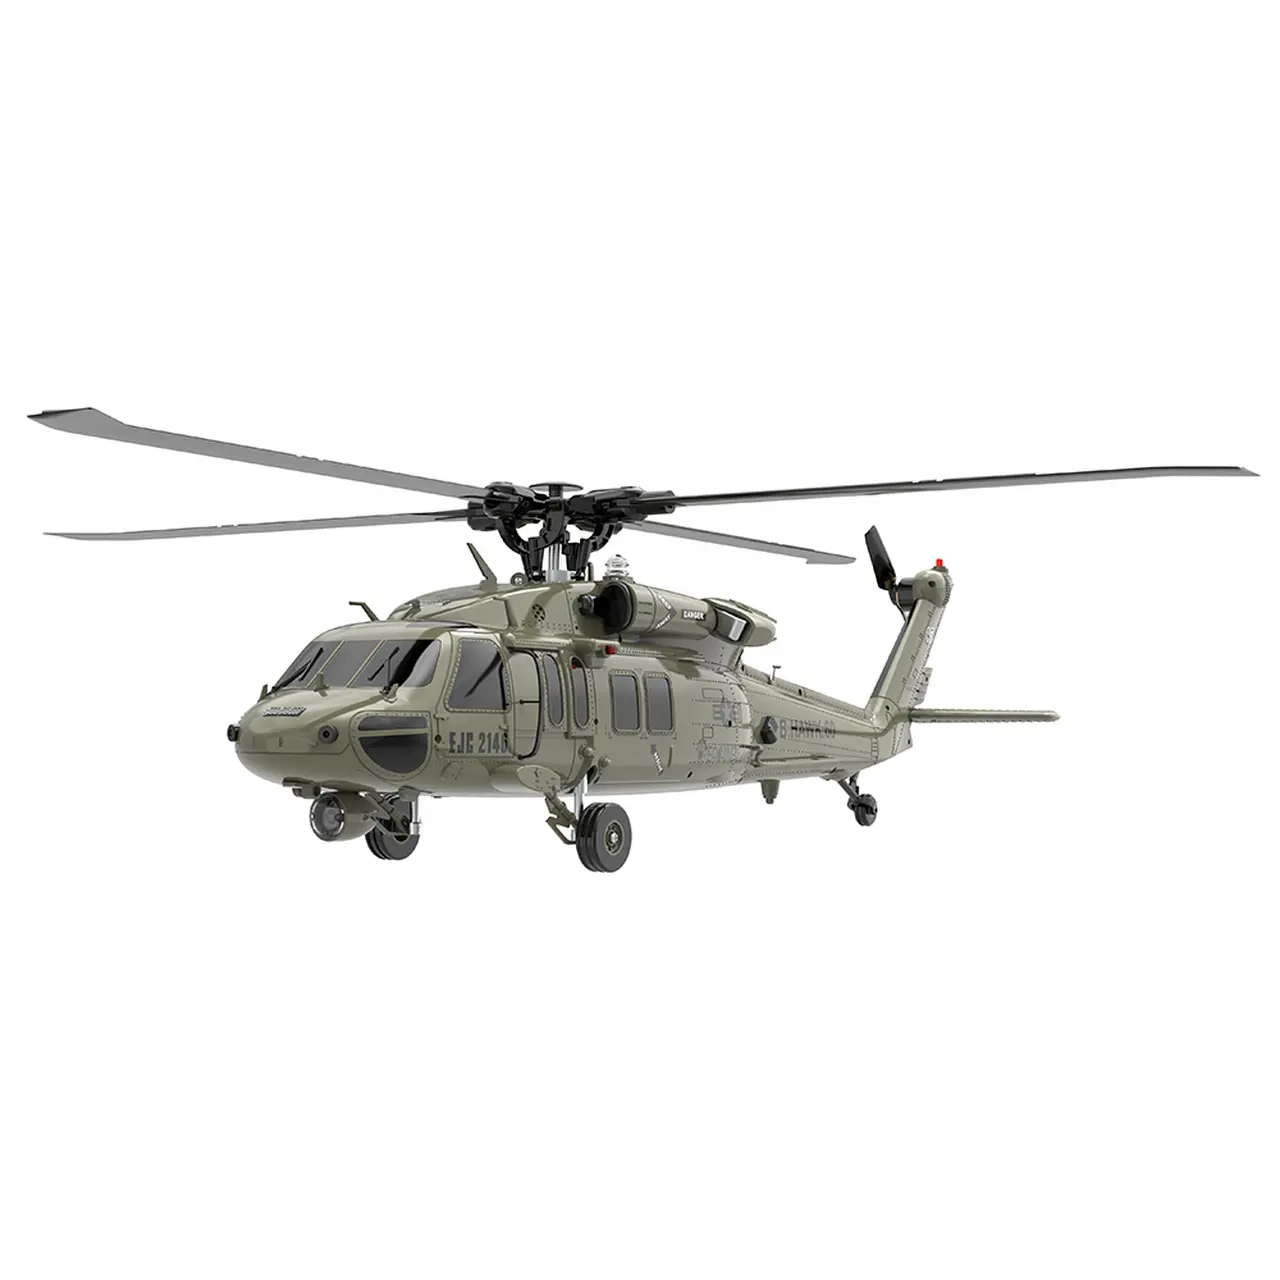 ホットリアルシミュレーションF09UH60ブラックRCヘリコプター6CH1/47パーソナルホビープレーン用スケール